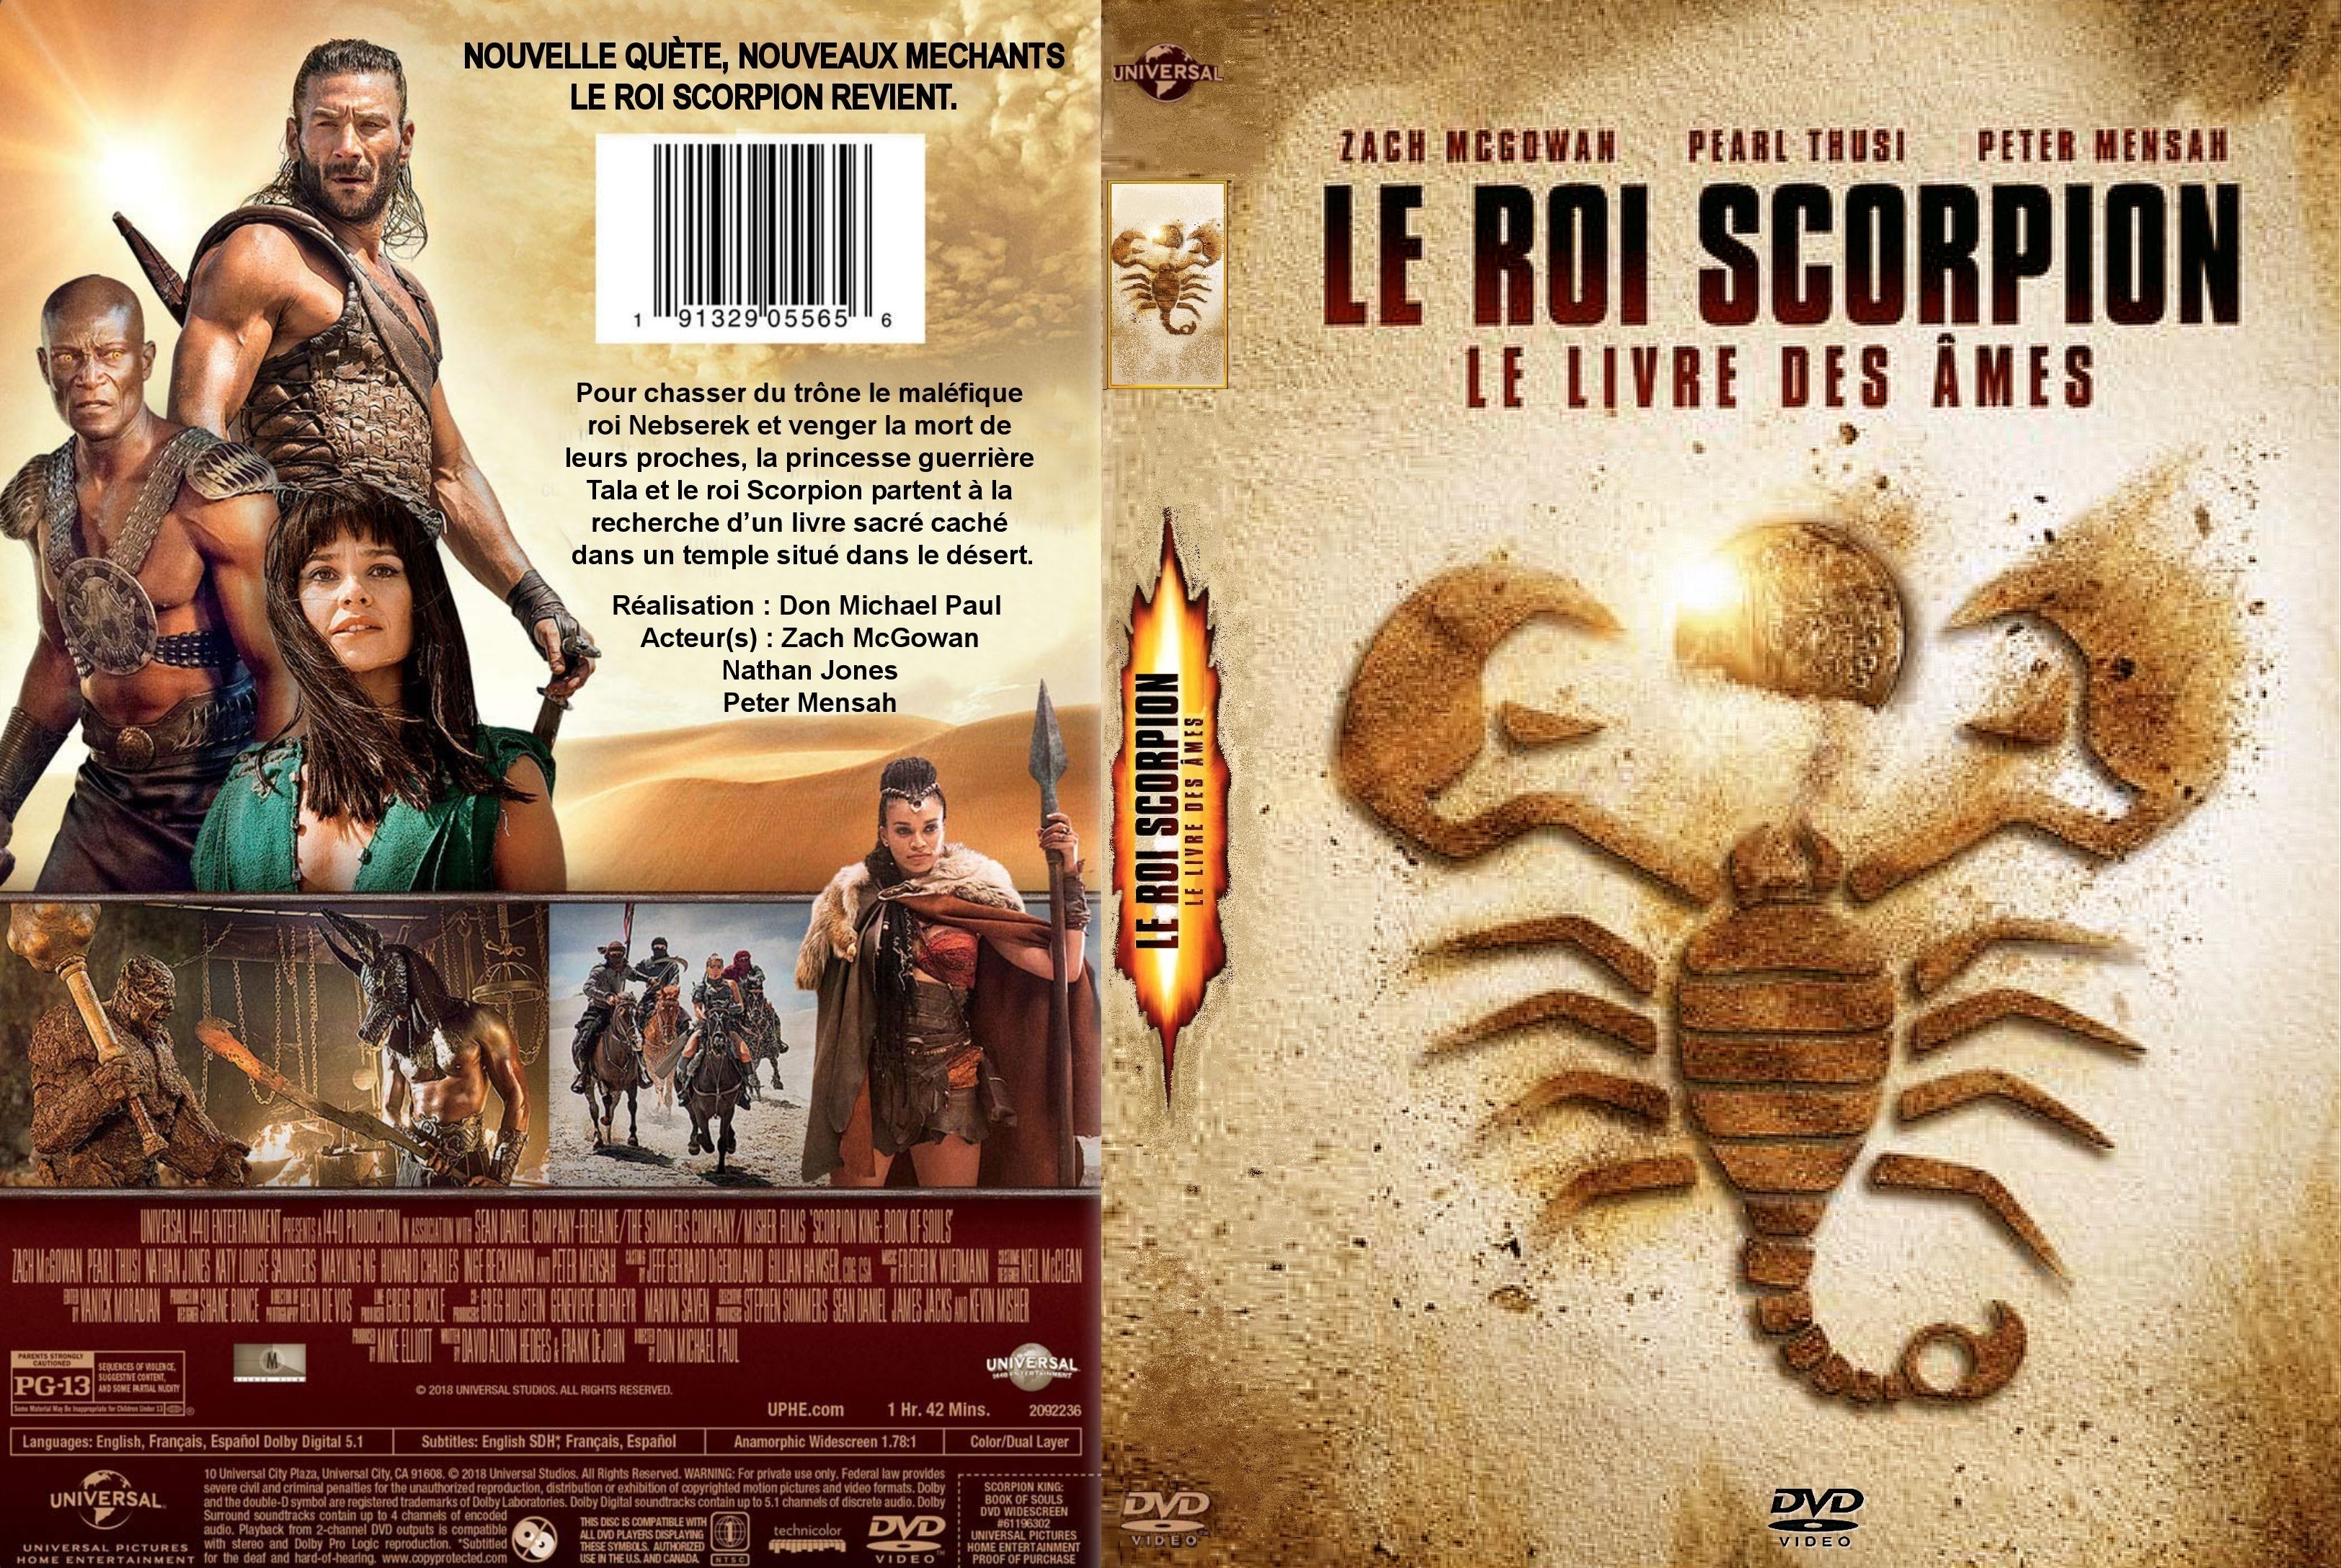 Jaquette DVD Le Roi Scorpion le livre des ames custom